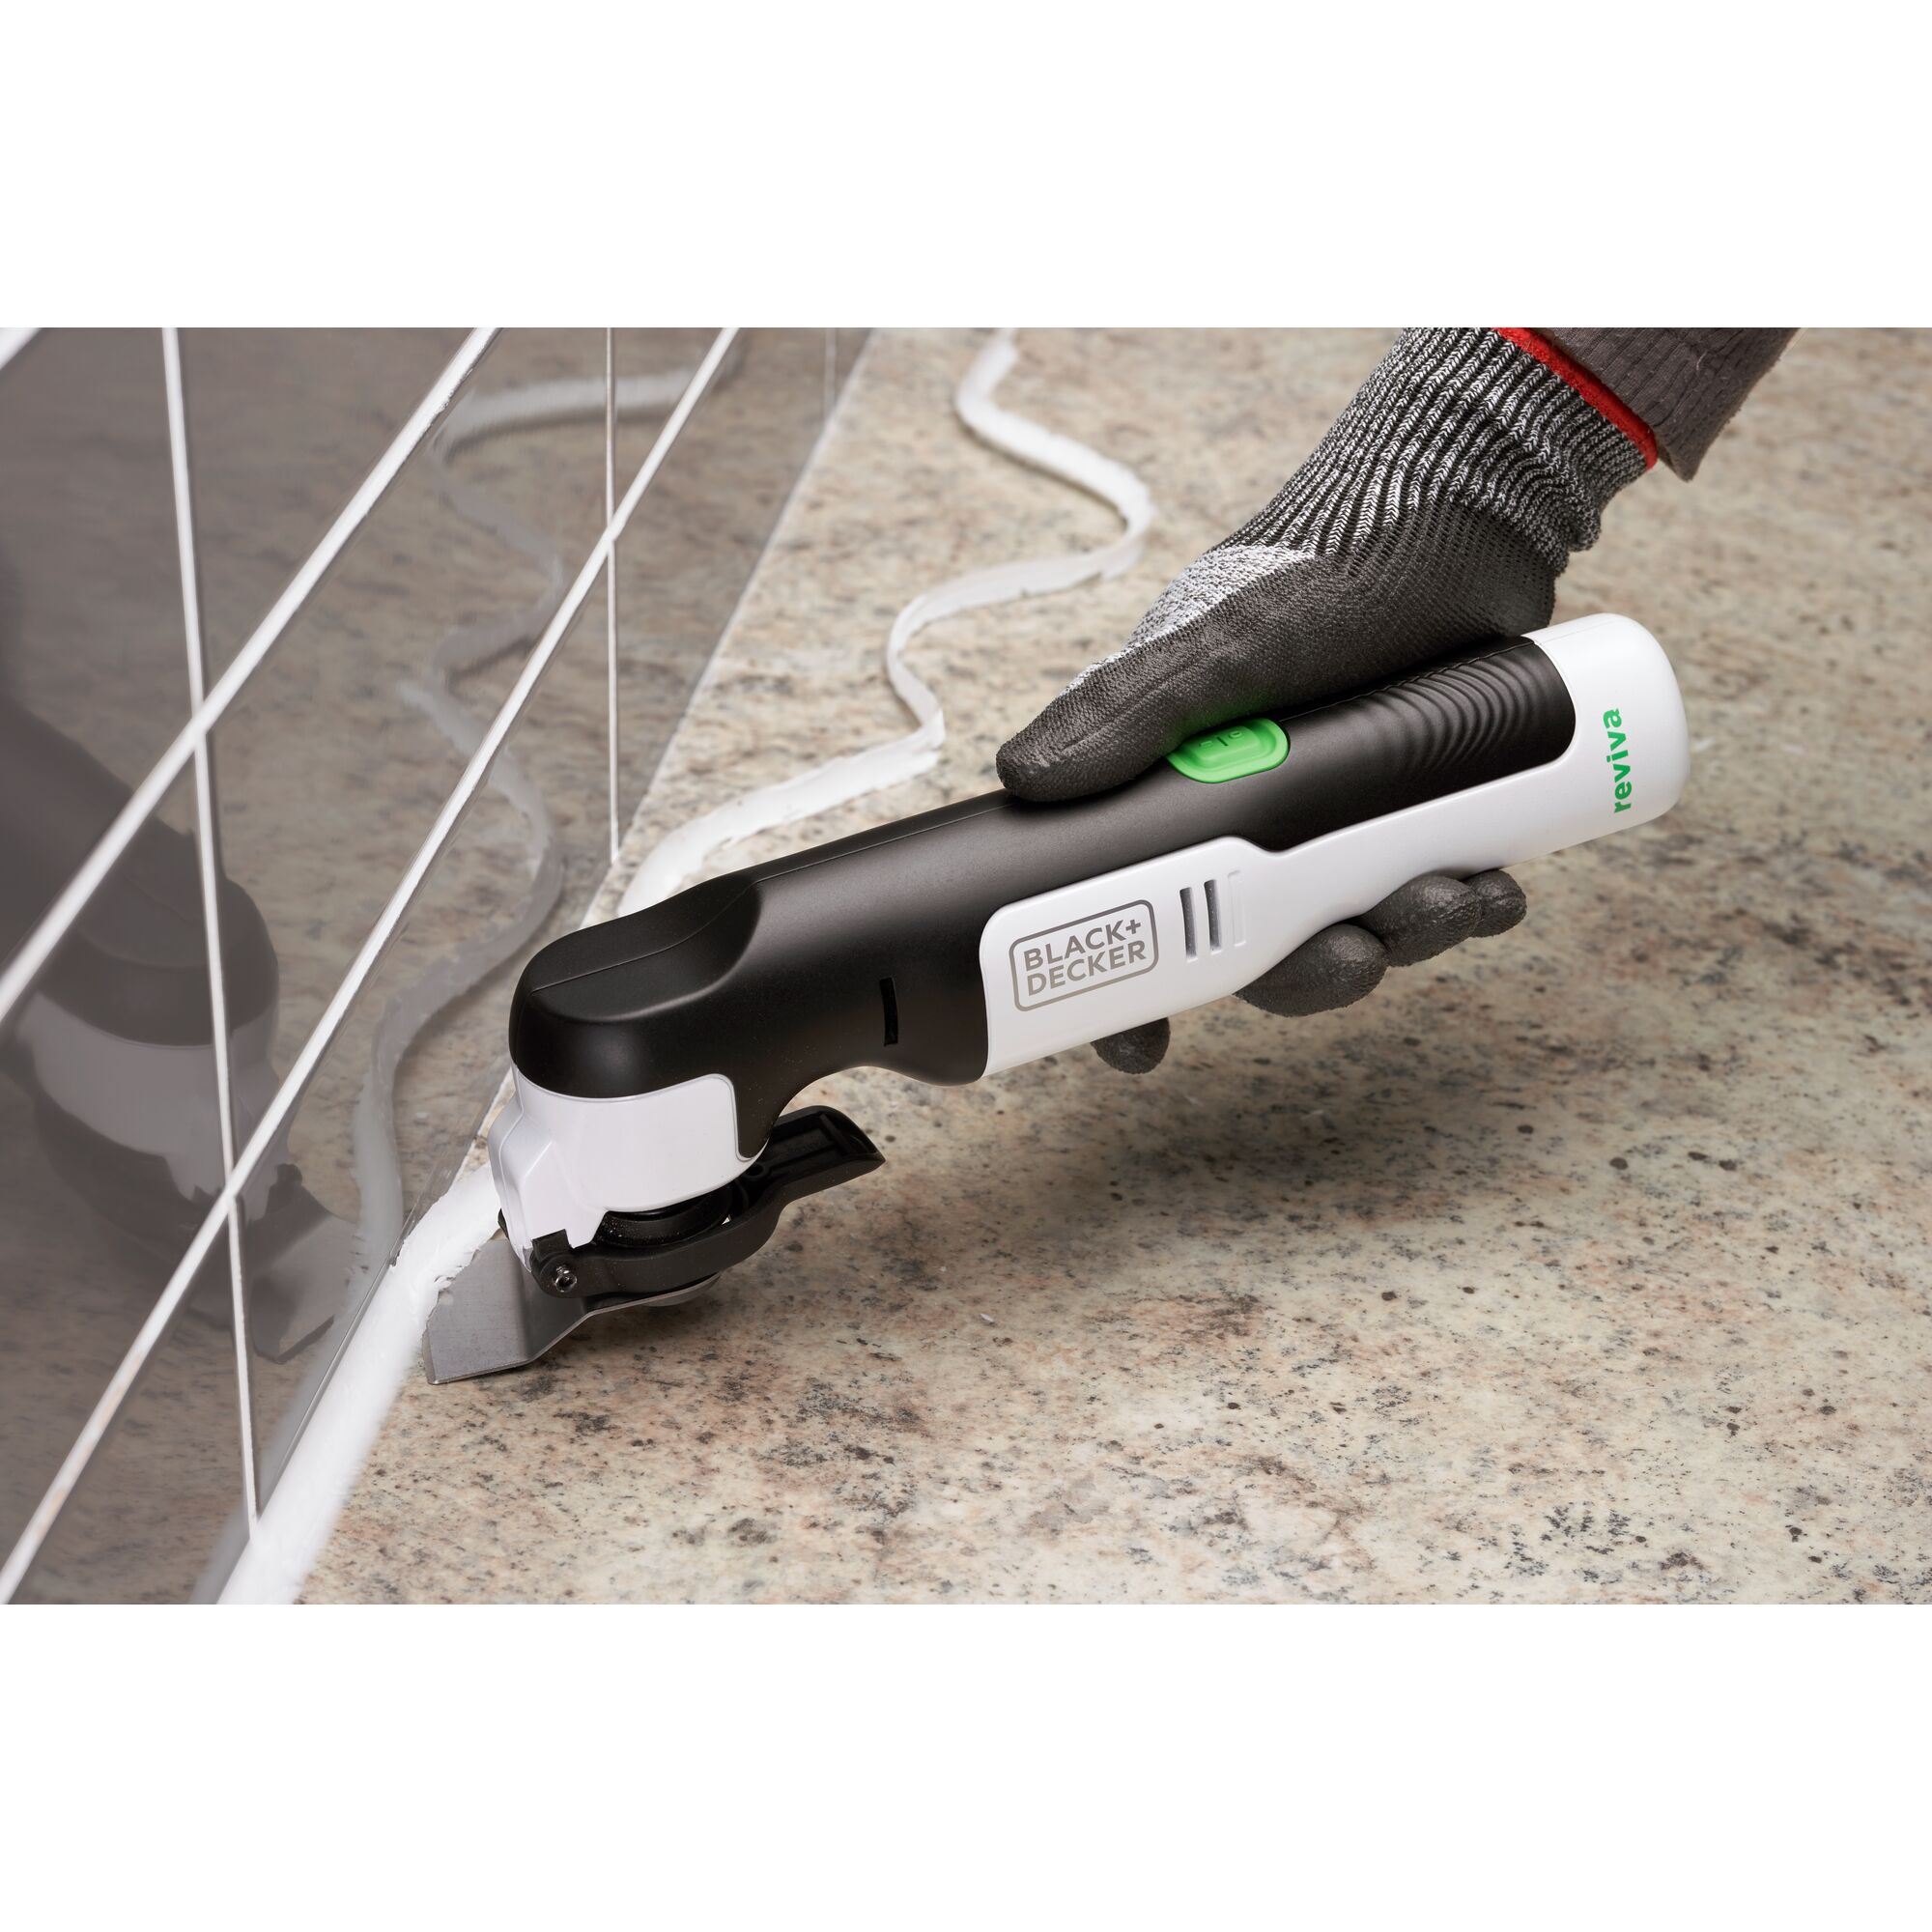 Black & Decker ® reviva™ 12V Cordless Oscillating Tool